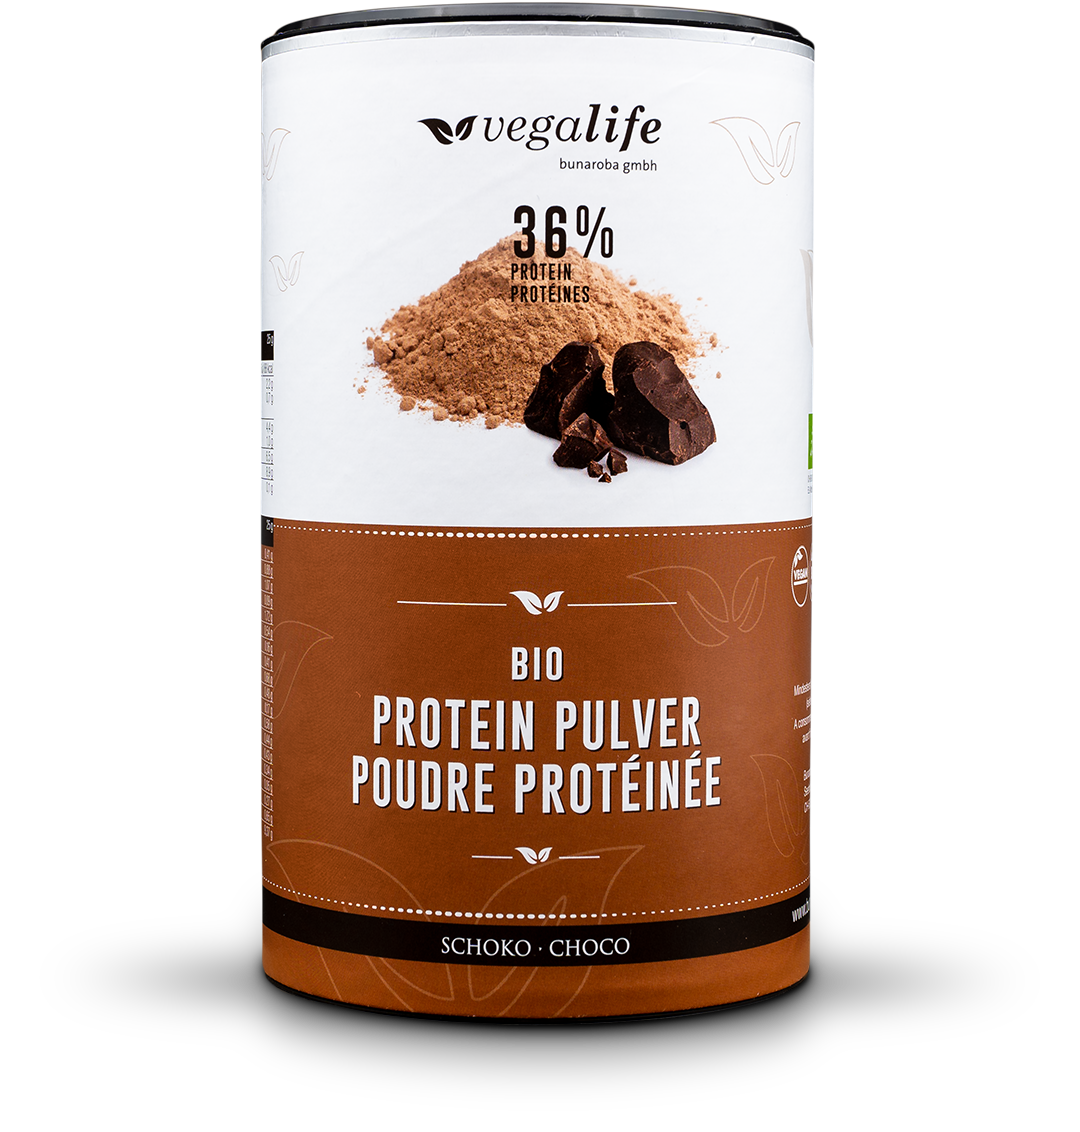 Veganes Proteinpulver mit 36% Protein Schoko